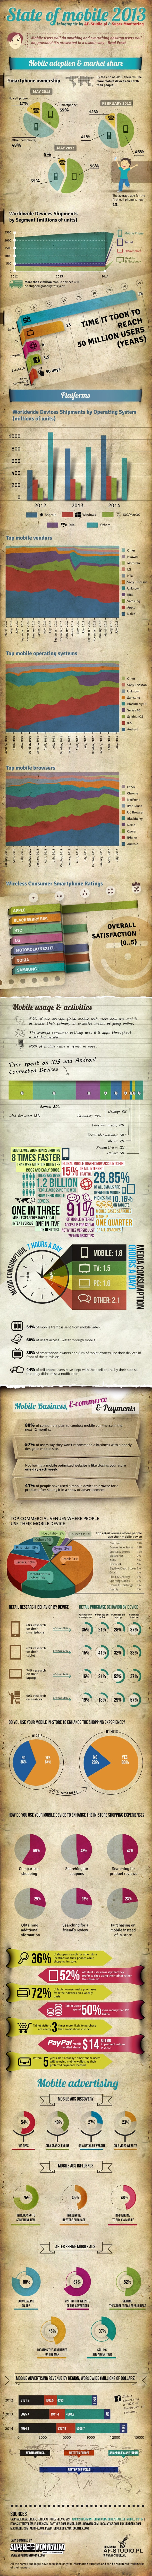 Como anda o mercado mundial mobile? confira o infográfico 10